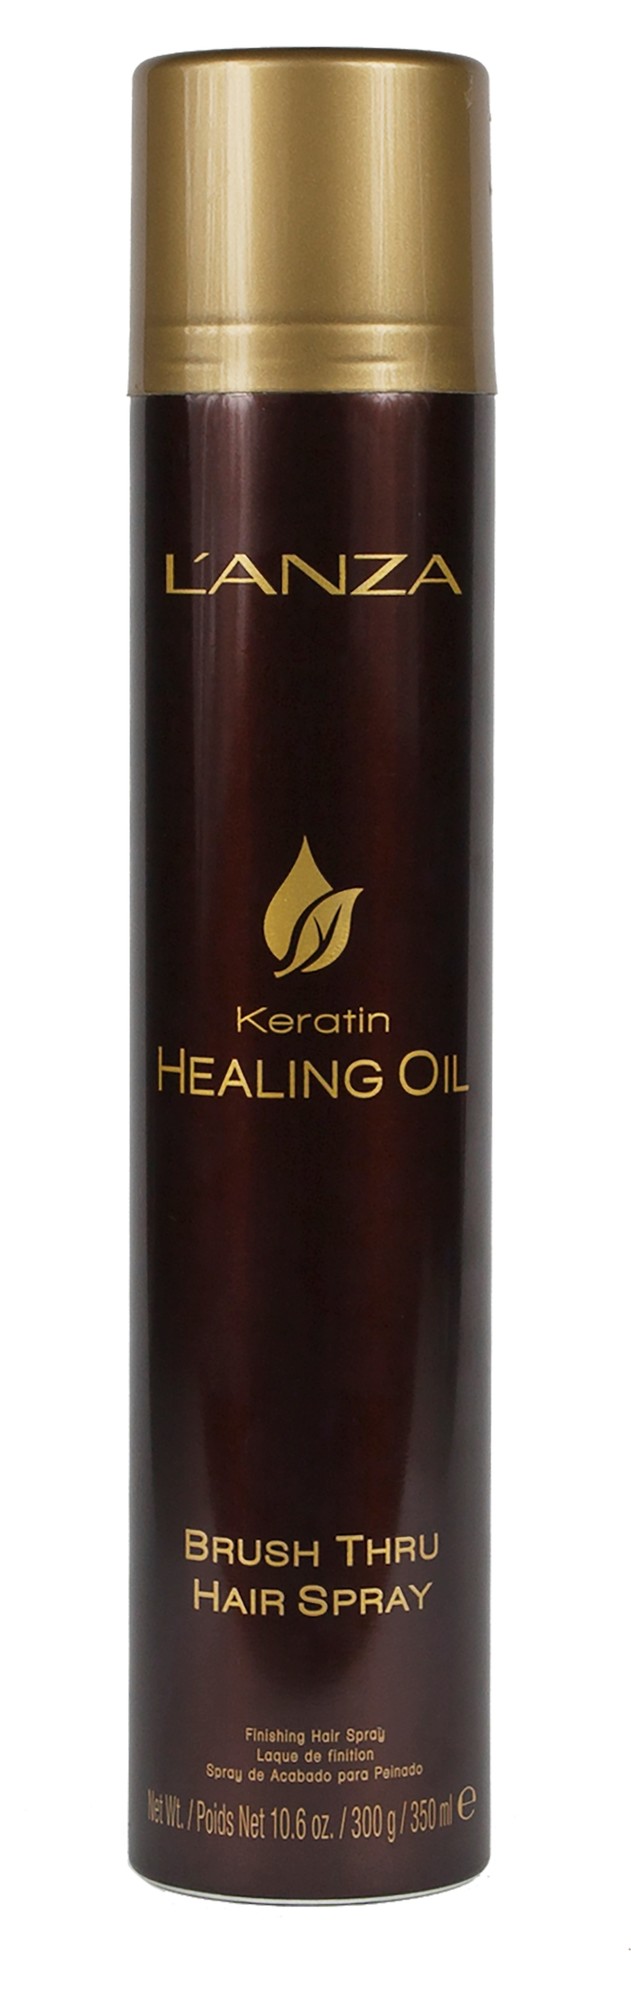 L'Anza Keratin Healing Oil Brush Thru Hairspray.